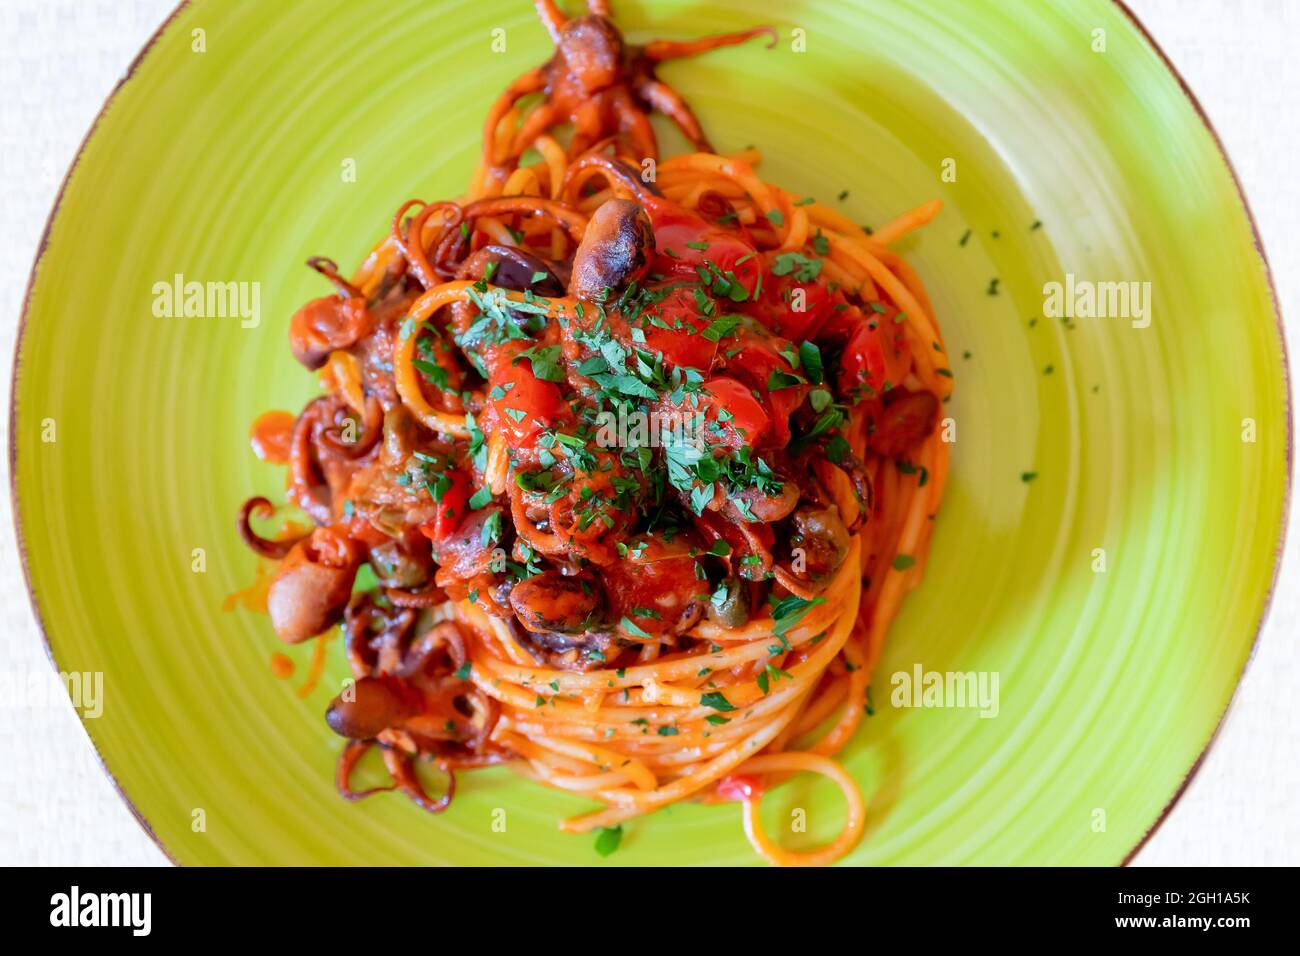 Spaghetti al polpo, salsa di pomodoro, olive e capperi. Ricetta tipica della cucina napoletana, in Italia. Pronto a mangiare. Foto Stock